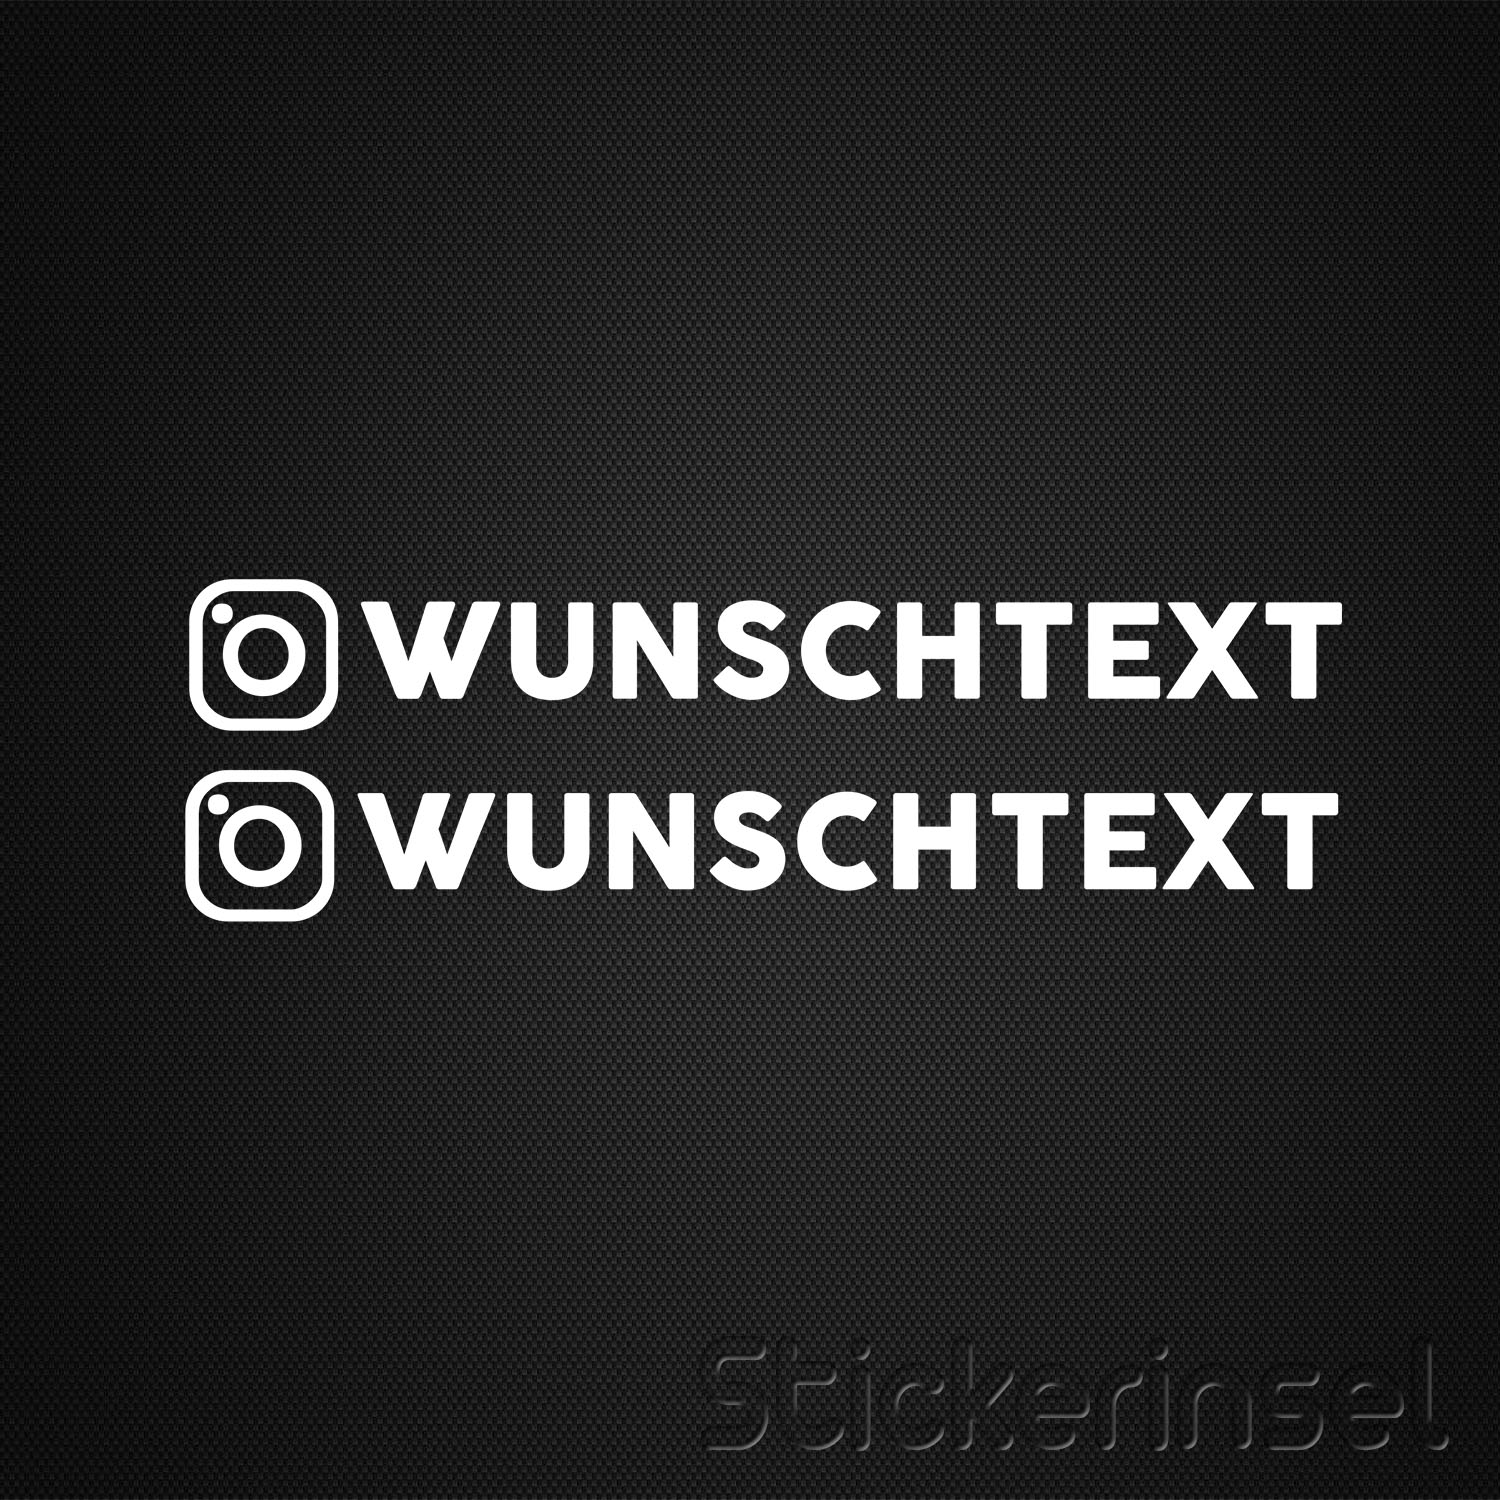 https://www.stickerinsel.at/wp-content/uploads/2021/12/Stickerinsel-Instagram.jpg